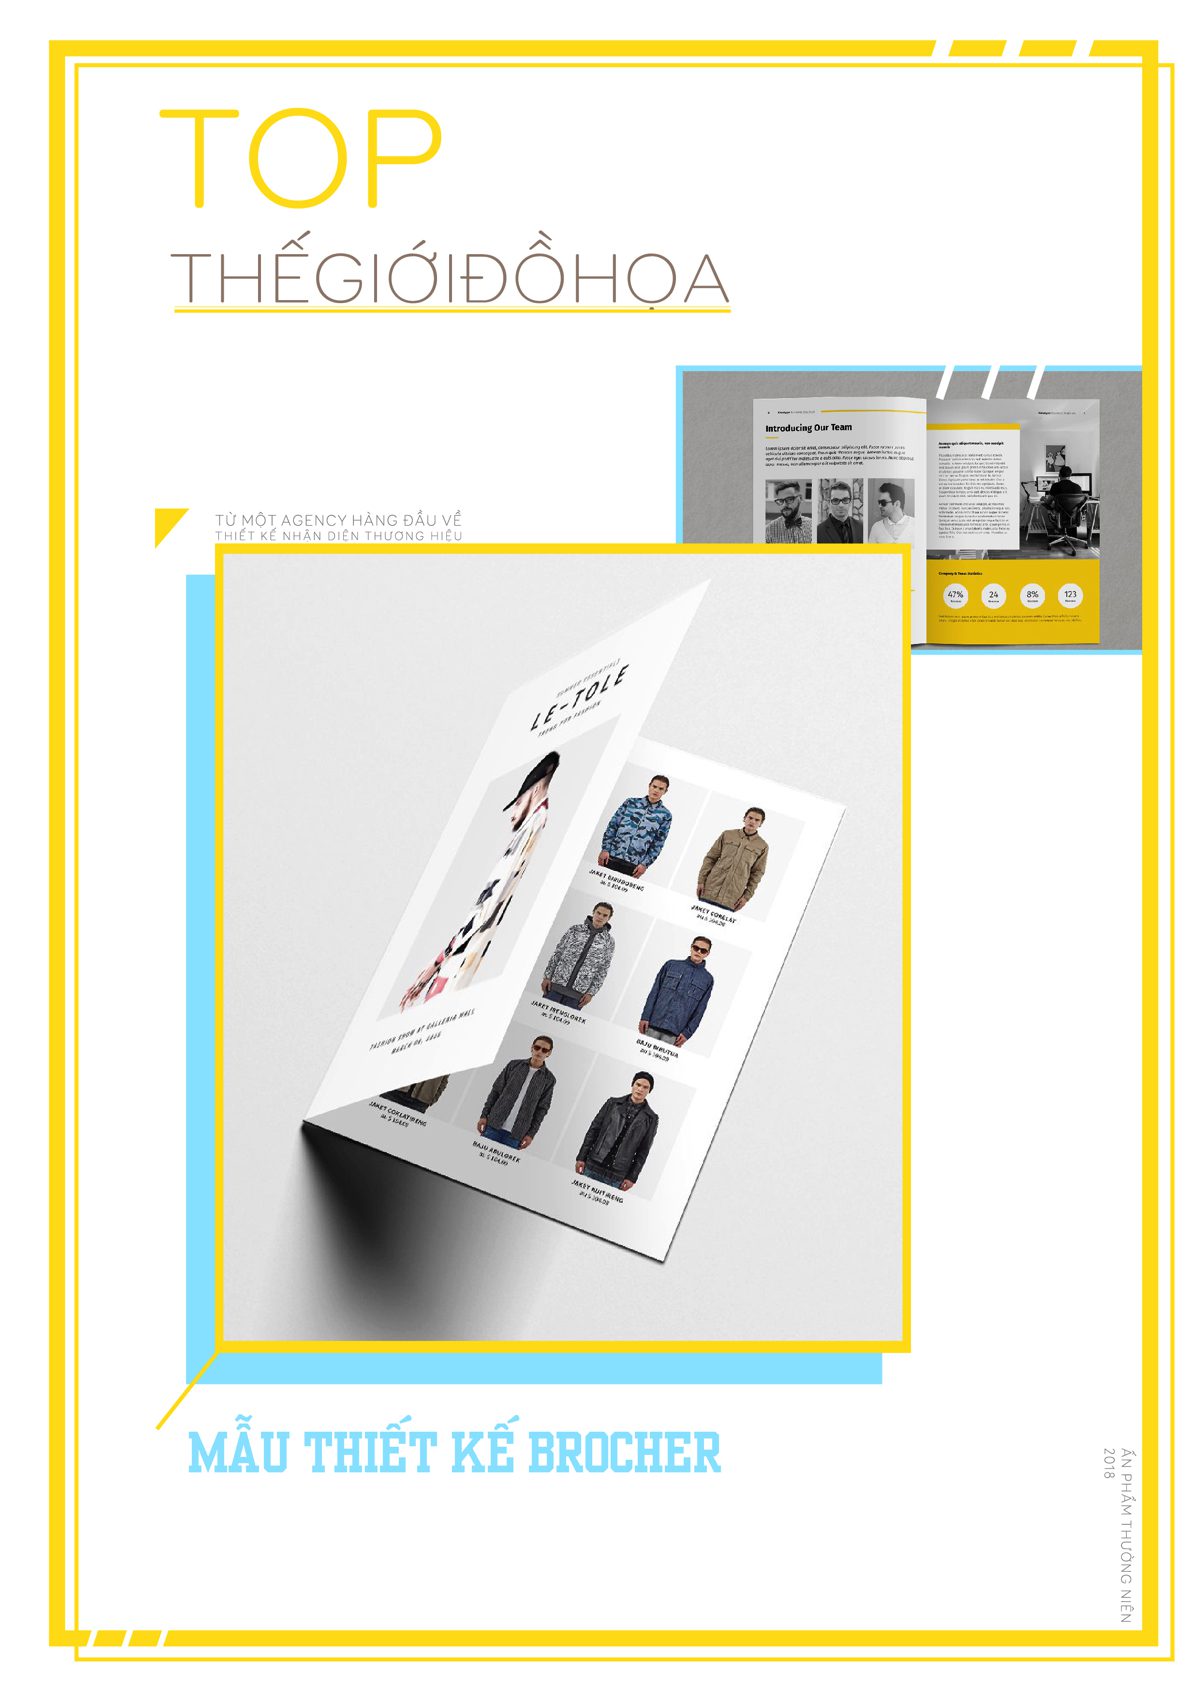 Tạp chí thế giới đồ họa – top mẫu thiết kế brochure